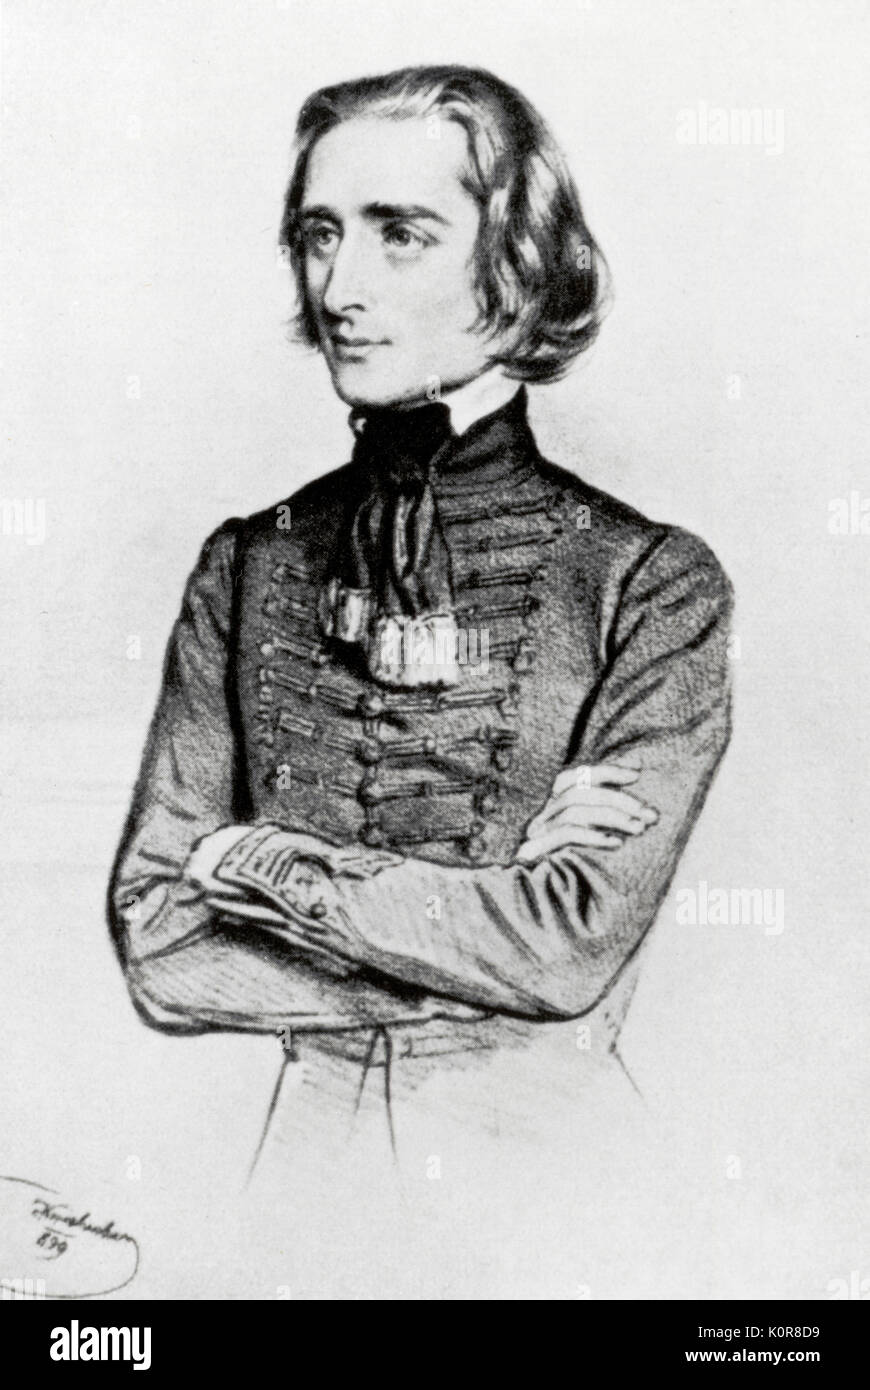 Franz Liszt (Ferencz) - portrait en costume national hongrois, par Kriehuber, 1840 - pianiste et compositeur hongrois. 22 octobre 1811 - 31 juillet 1886. Banque D'Images